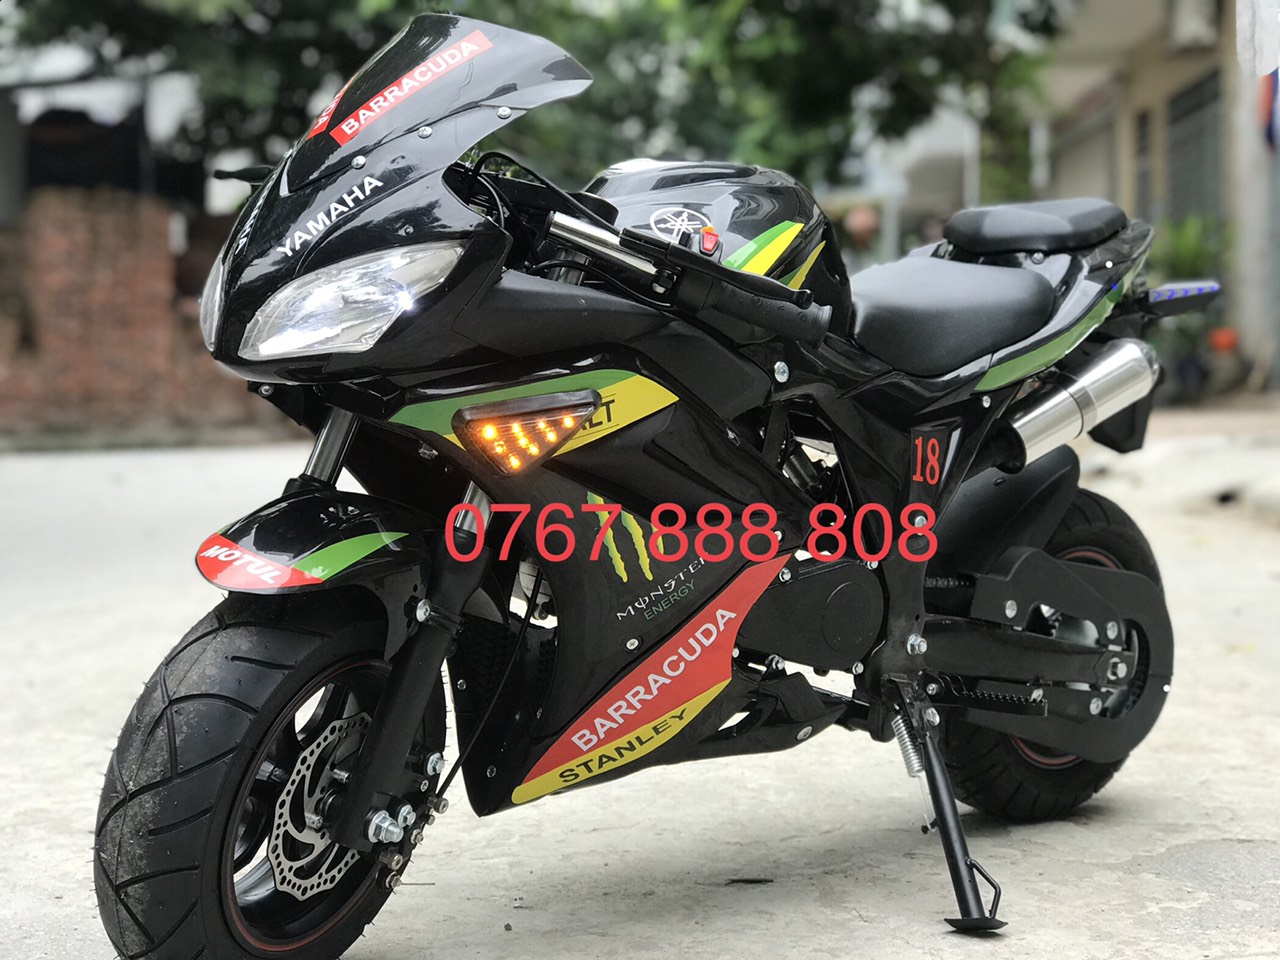 Giá bán môtô Yamaha R15 v3 2017 chỉ 99 triệu đồng tại Việt Nam